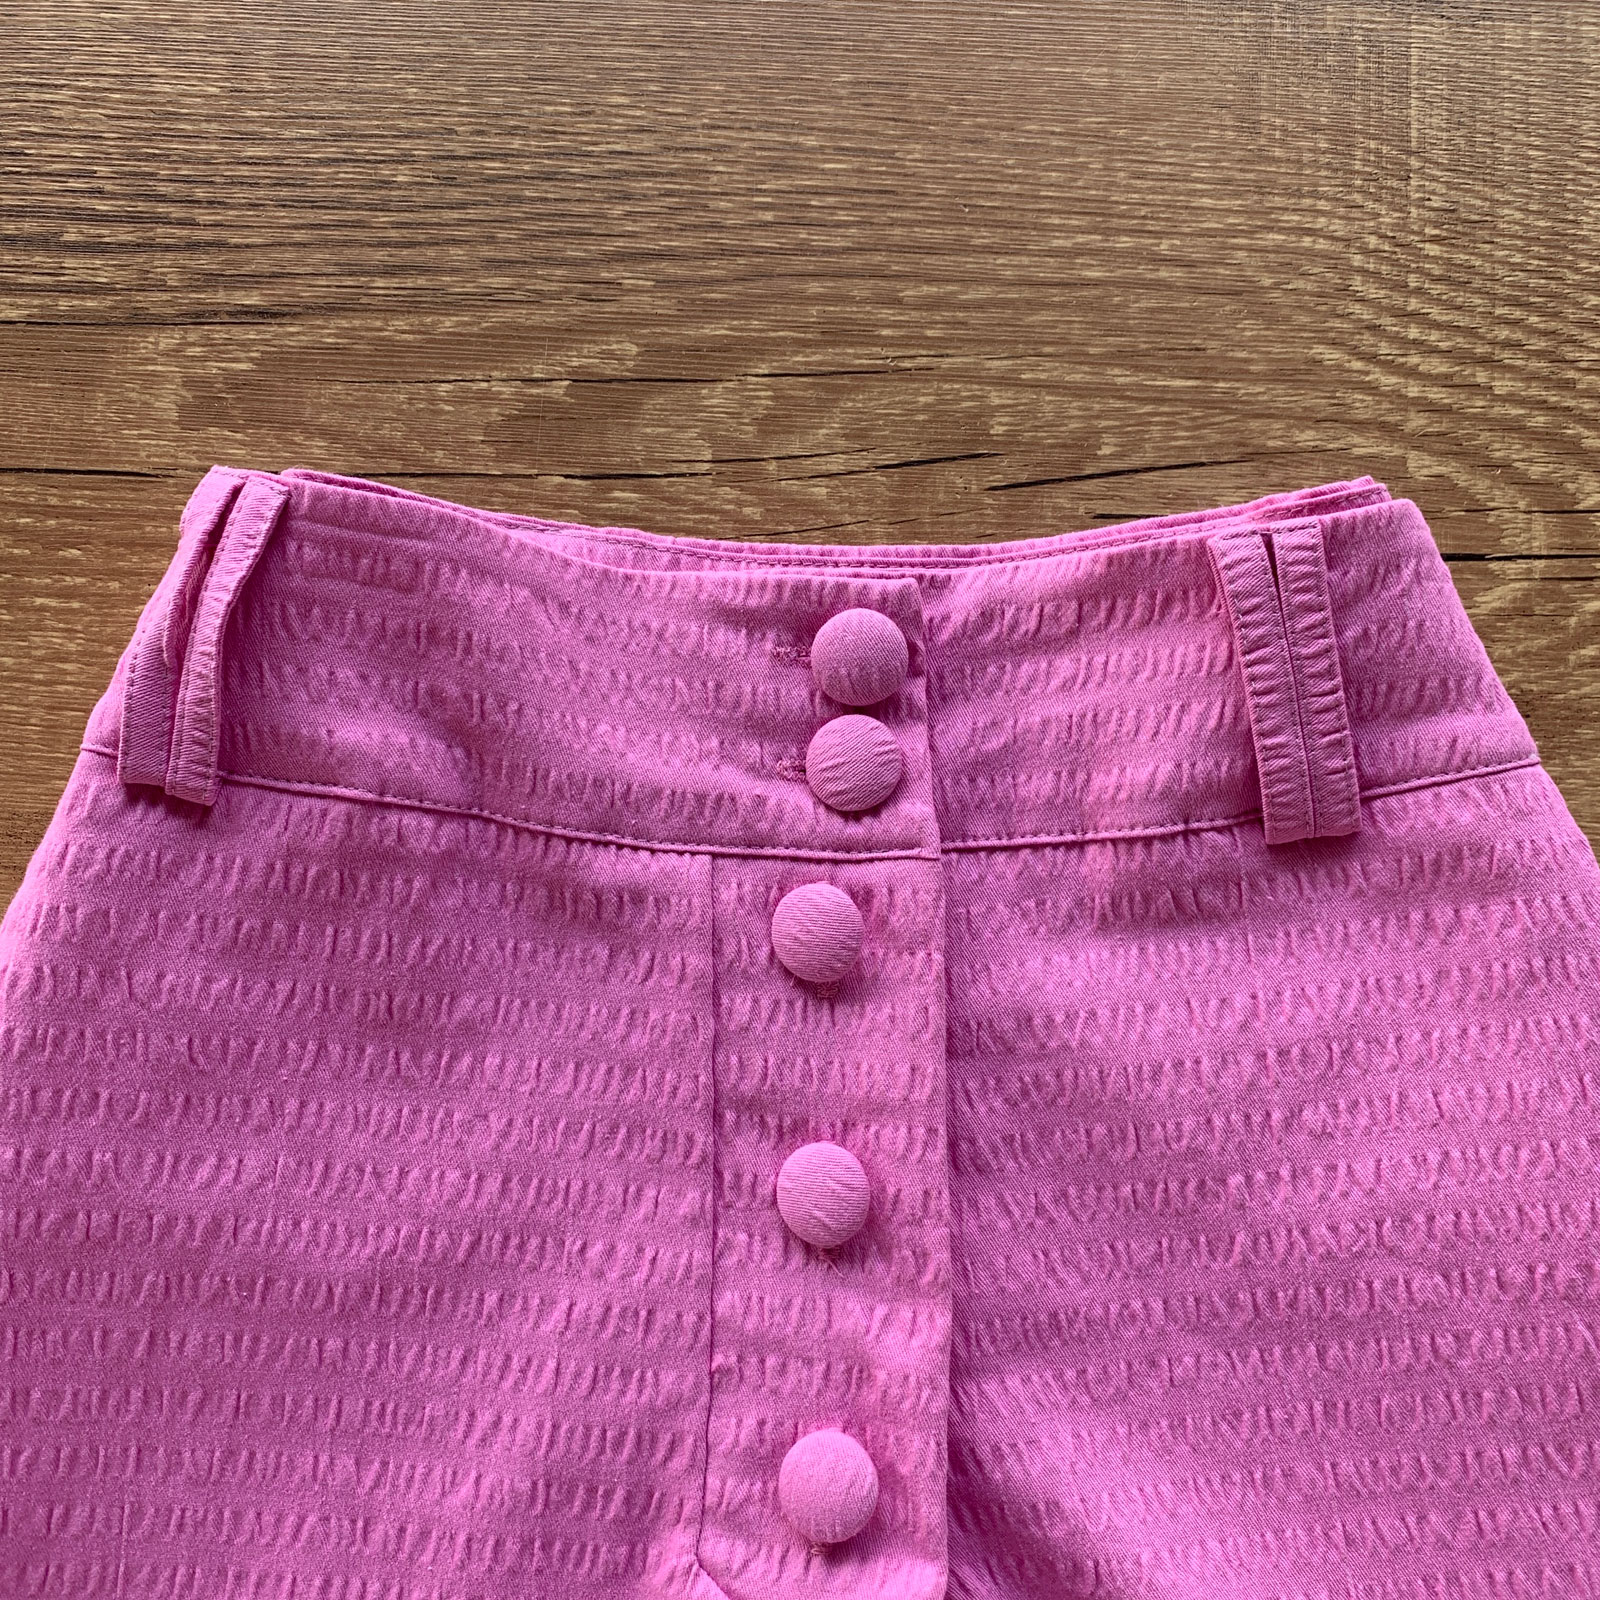 Short Cotton Barra Dobrada e Botões Encapados Pink Dondoca Moda Feminina